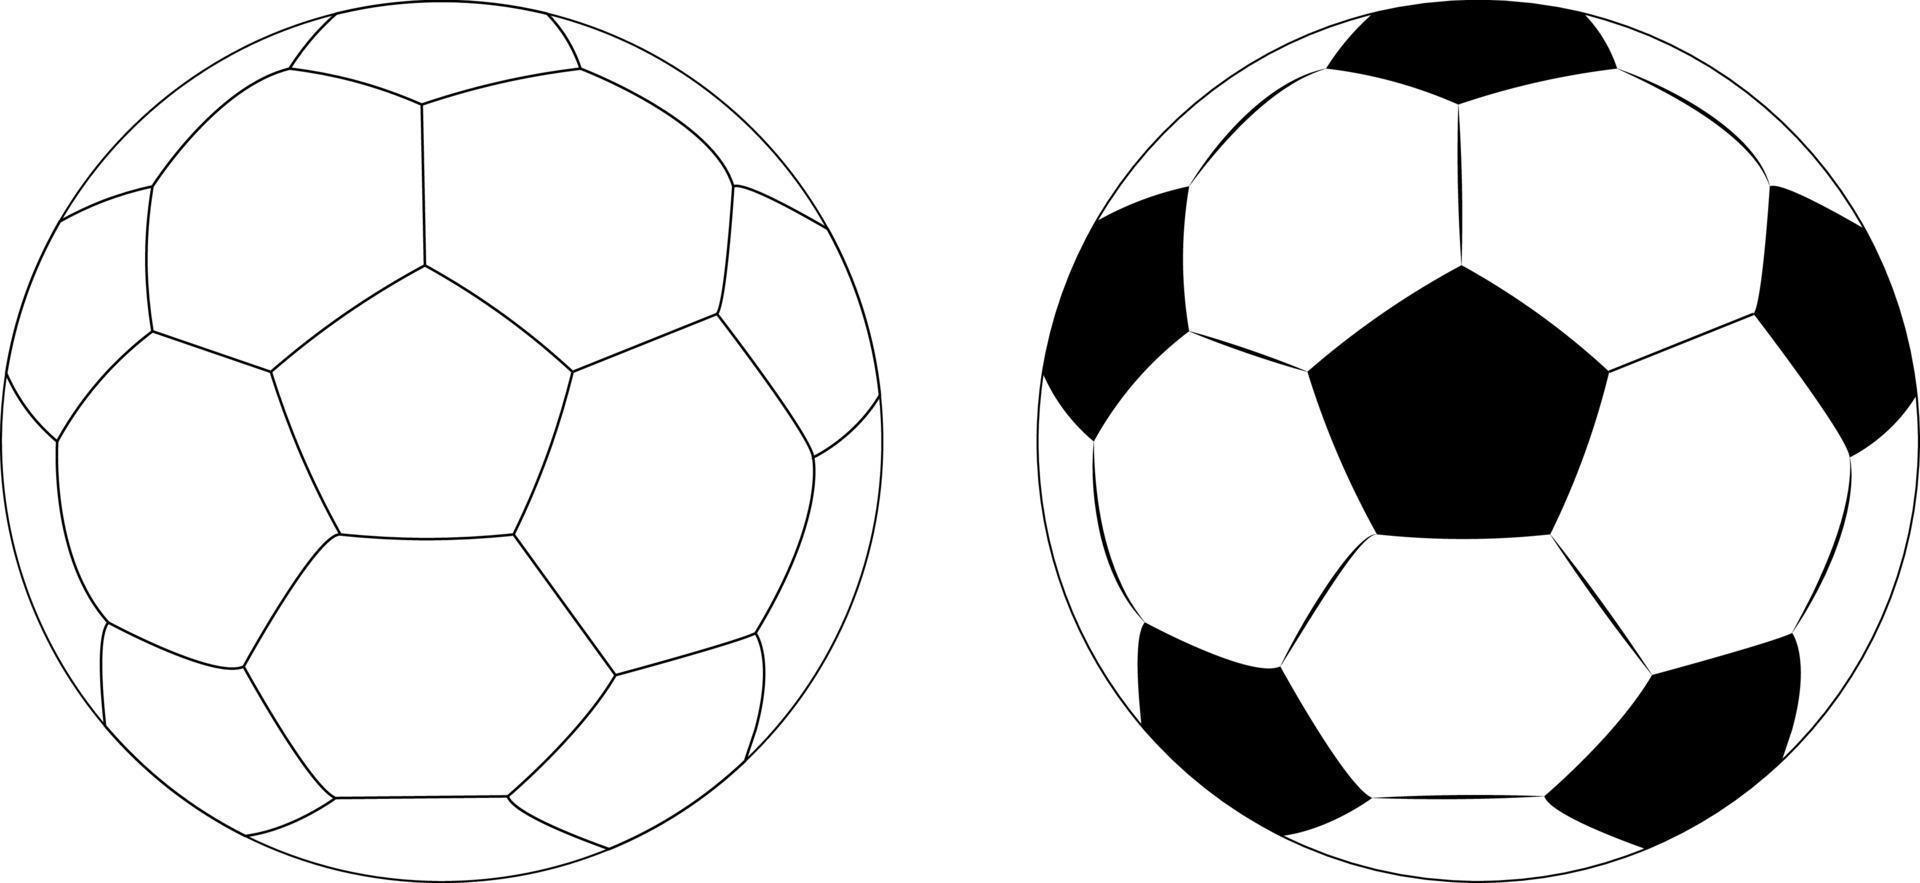 icônes de ballon de football dans deux styles, sport de jeu de football pour la compétition. objet joueur professionnel. illustration réaliste de vecteur isolée sur fond transparent blanc.